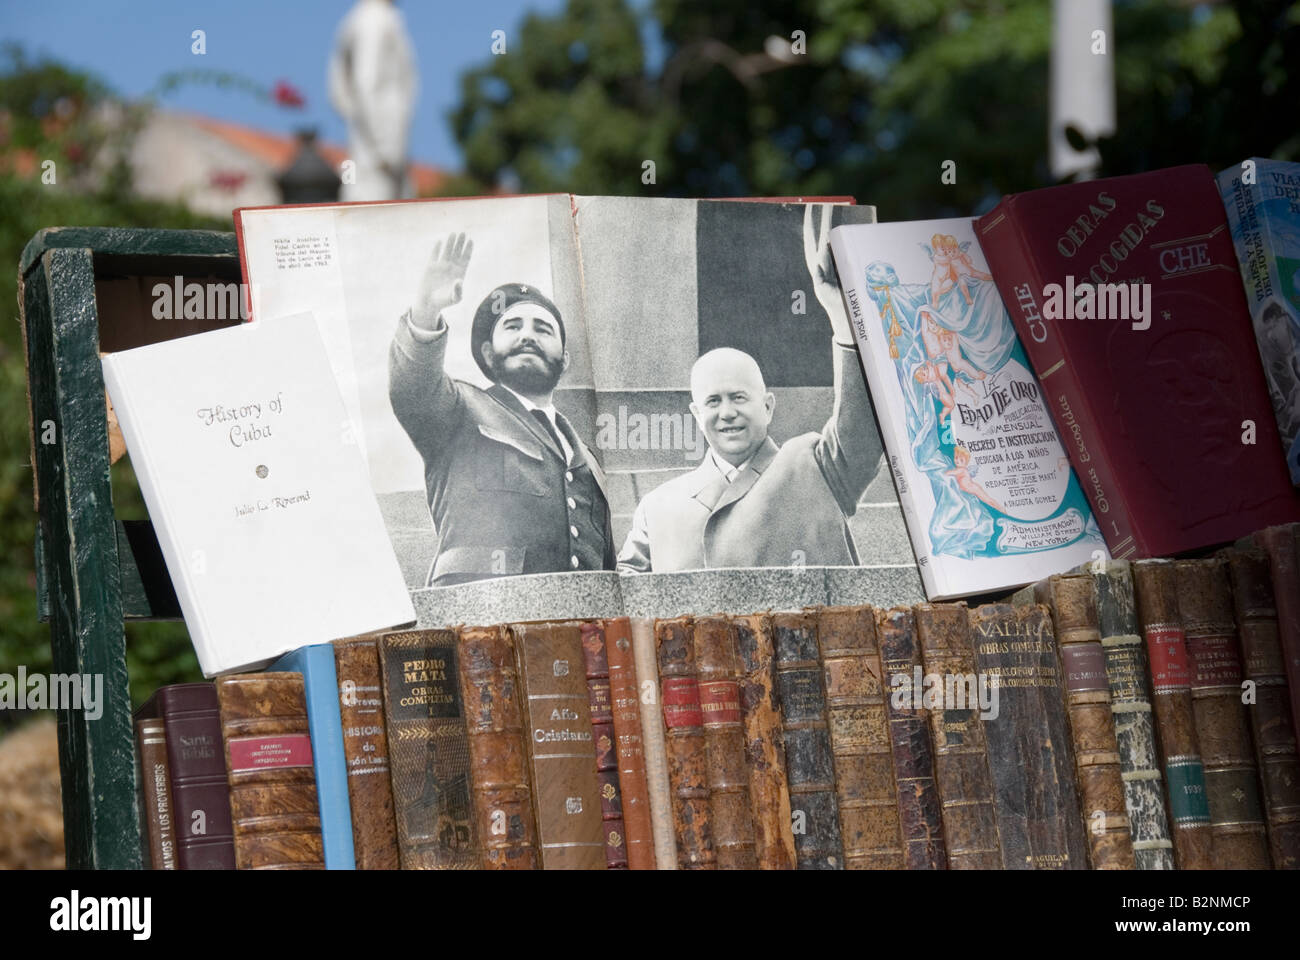 Picture of Fidel Castrol and Russian delegate Nikita Jruschov at a book market on Plaza De Armas in La Habana Vieja Havana Cuba Stock Photo